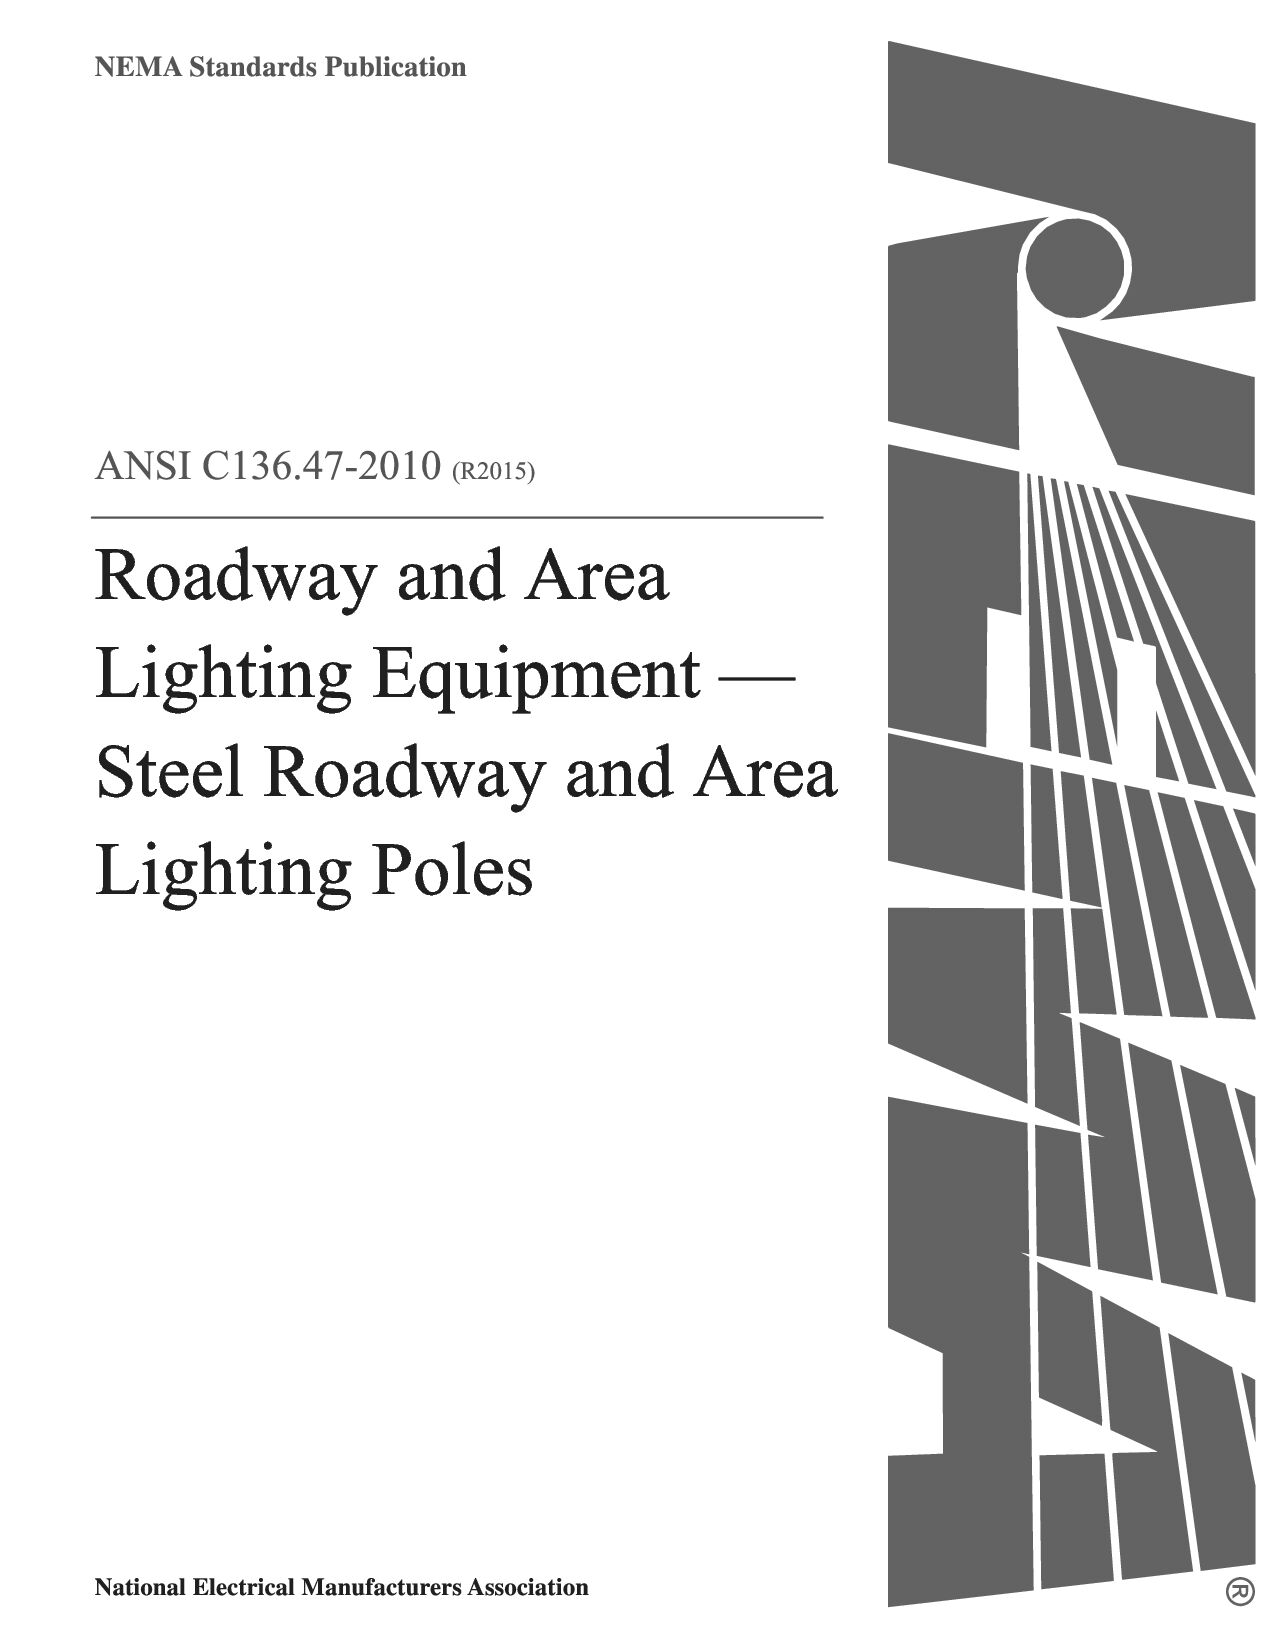 ANSI C136.47-2010(2015)